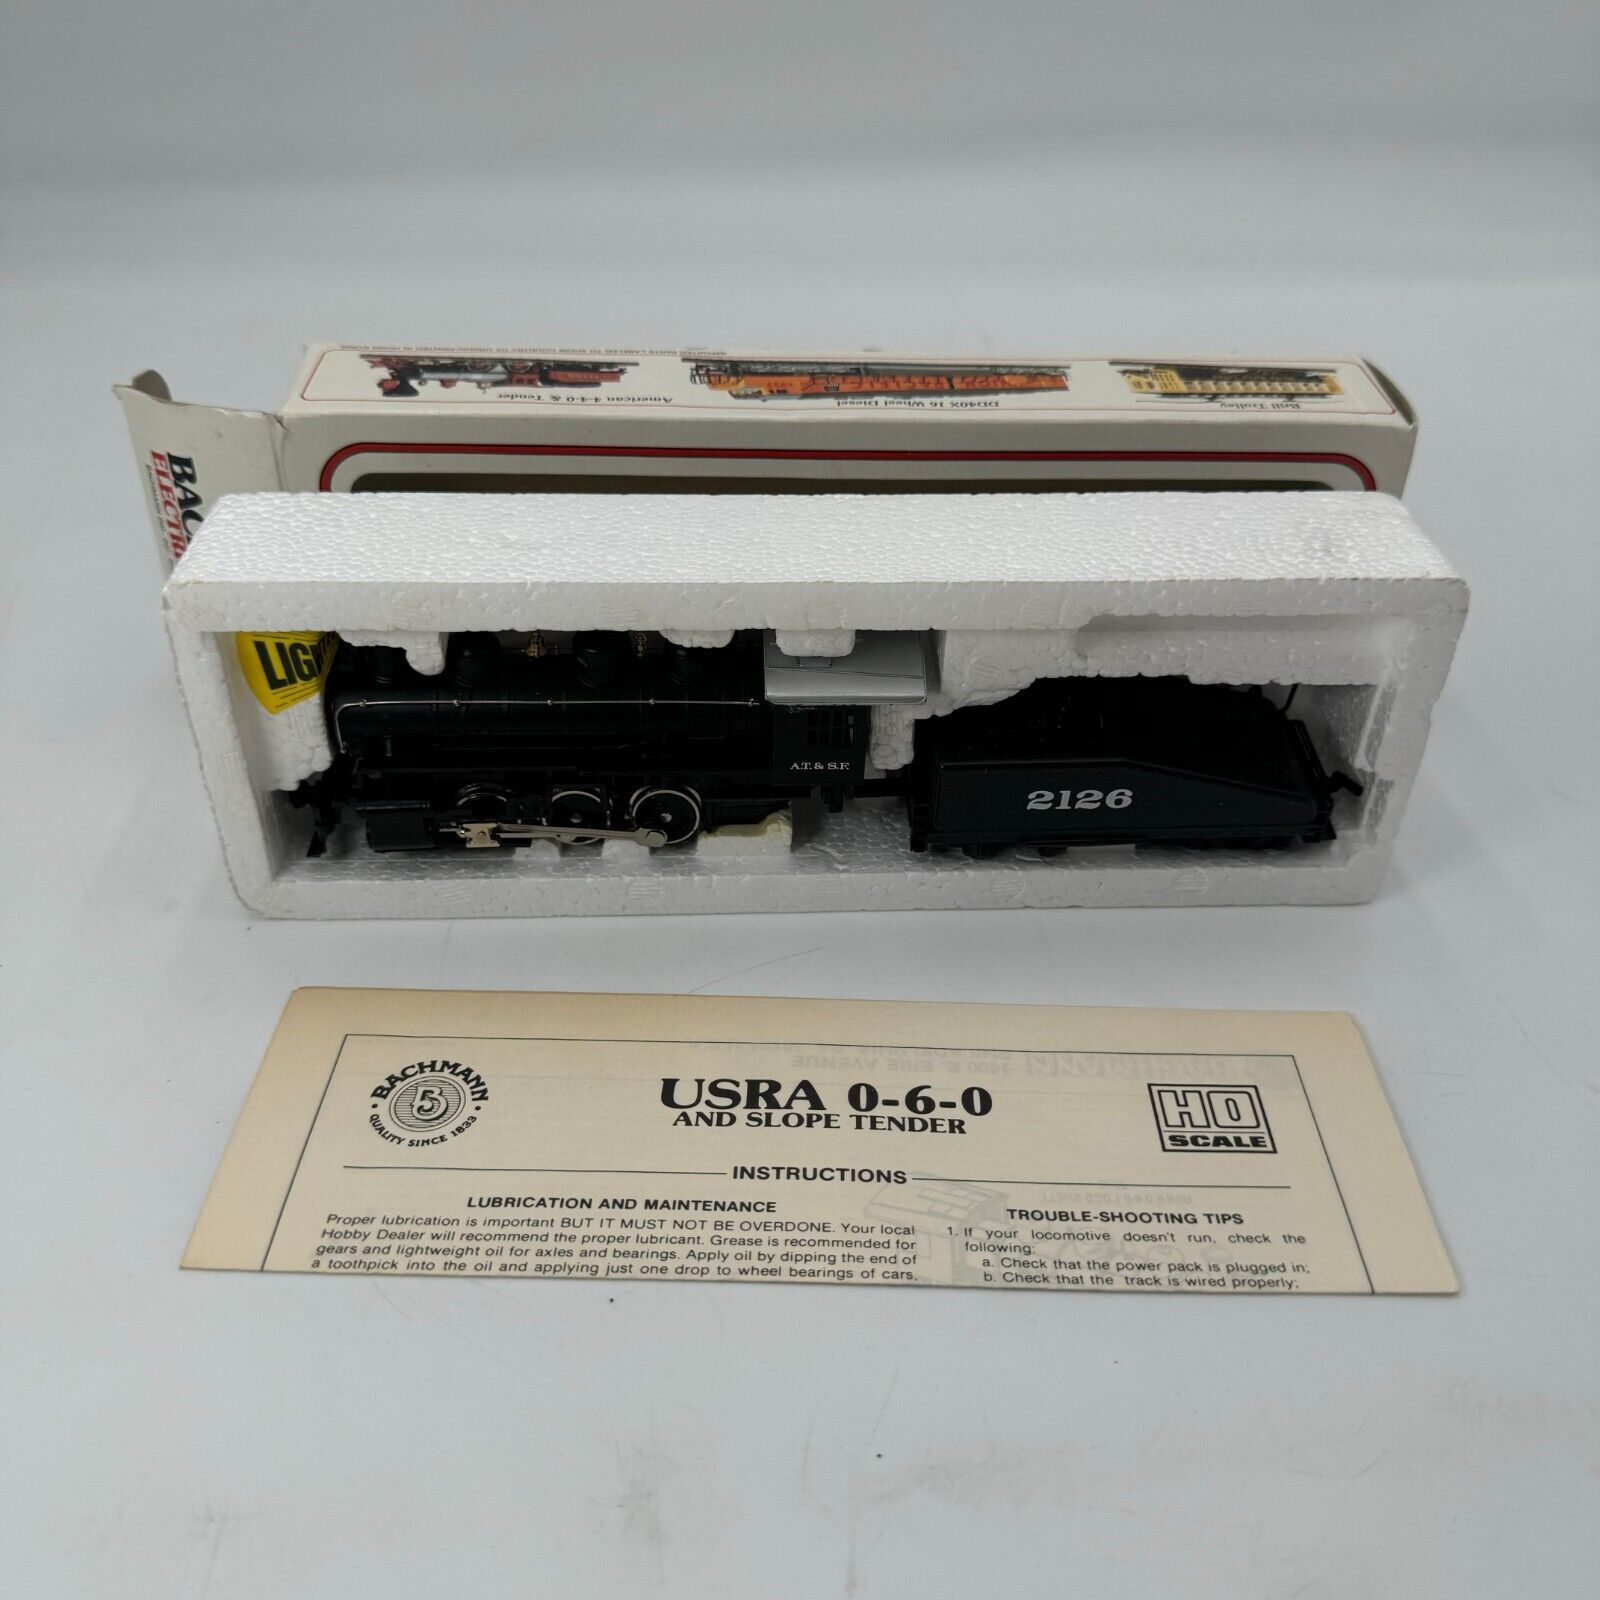 Bachmann HO Scale USRA 0-6-0 & Slope Tender Santa Fe 2126 Railroad Train Car